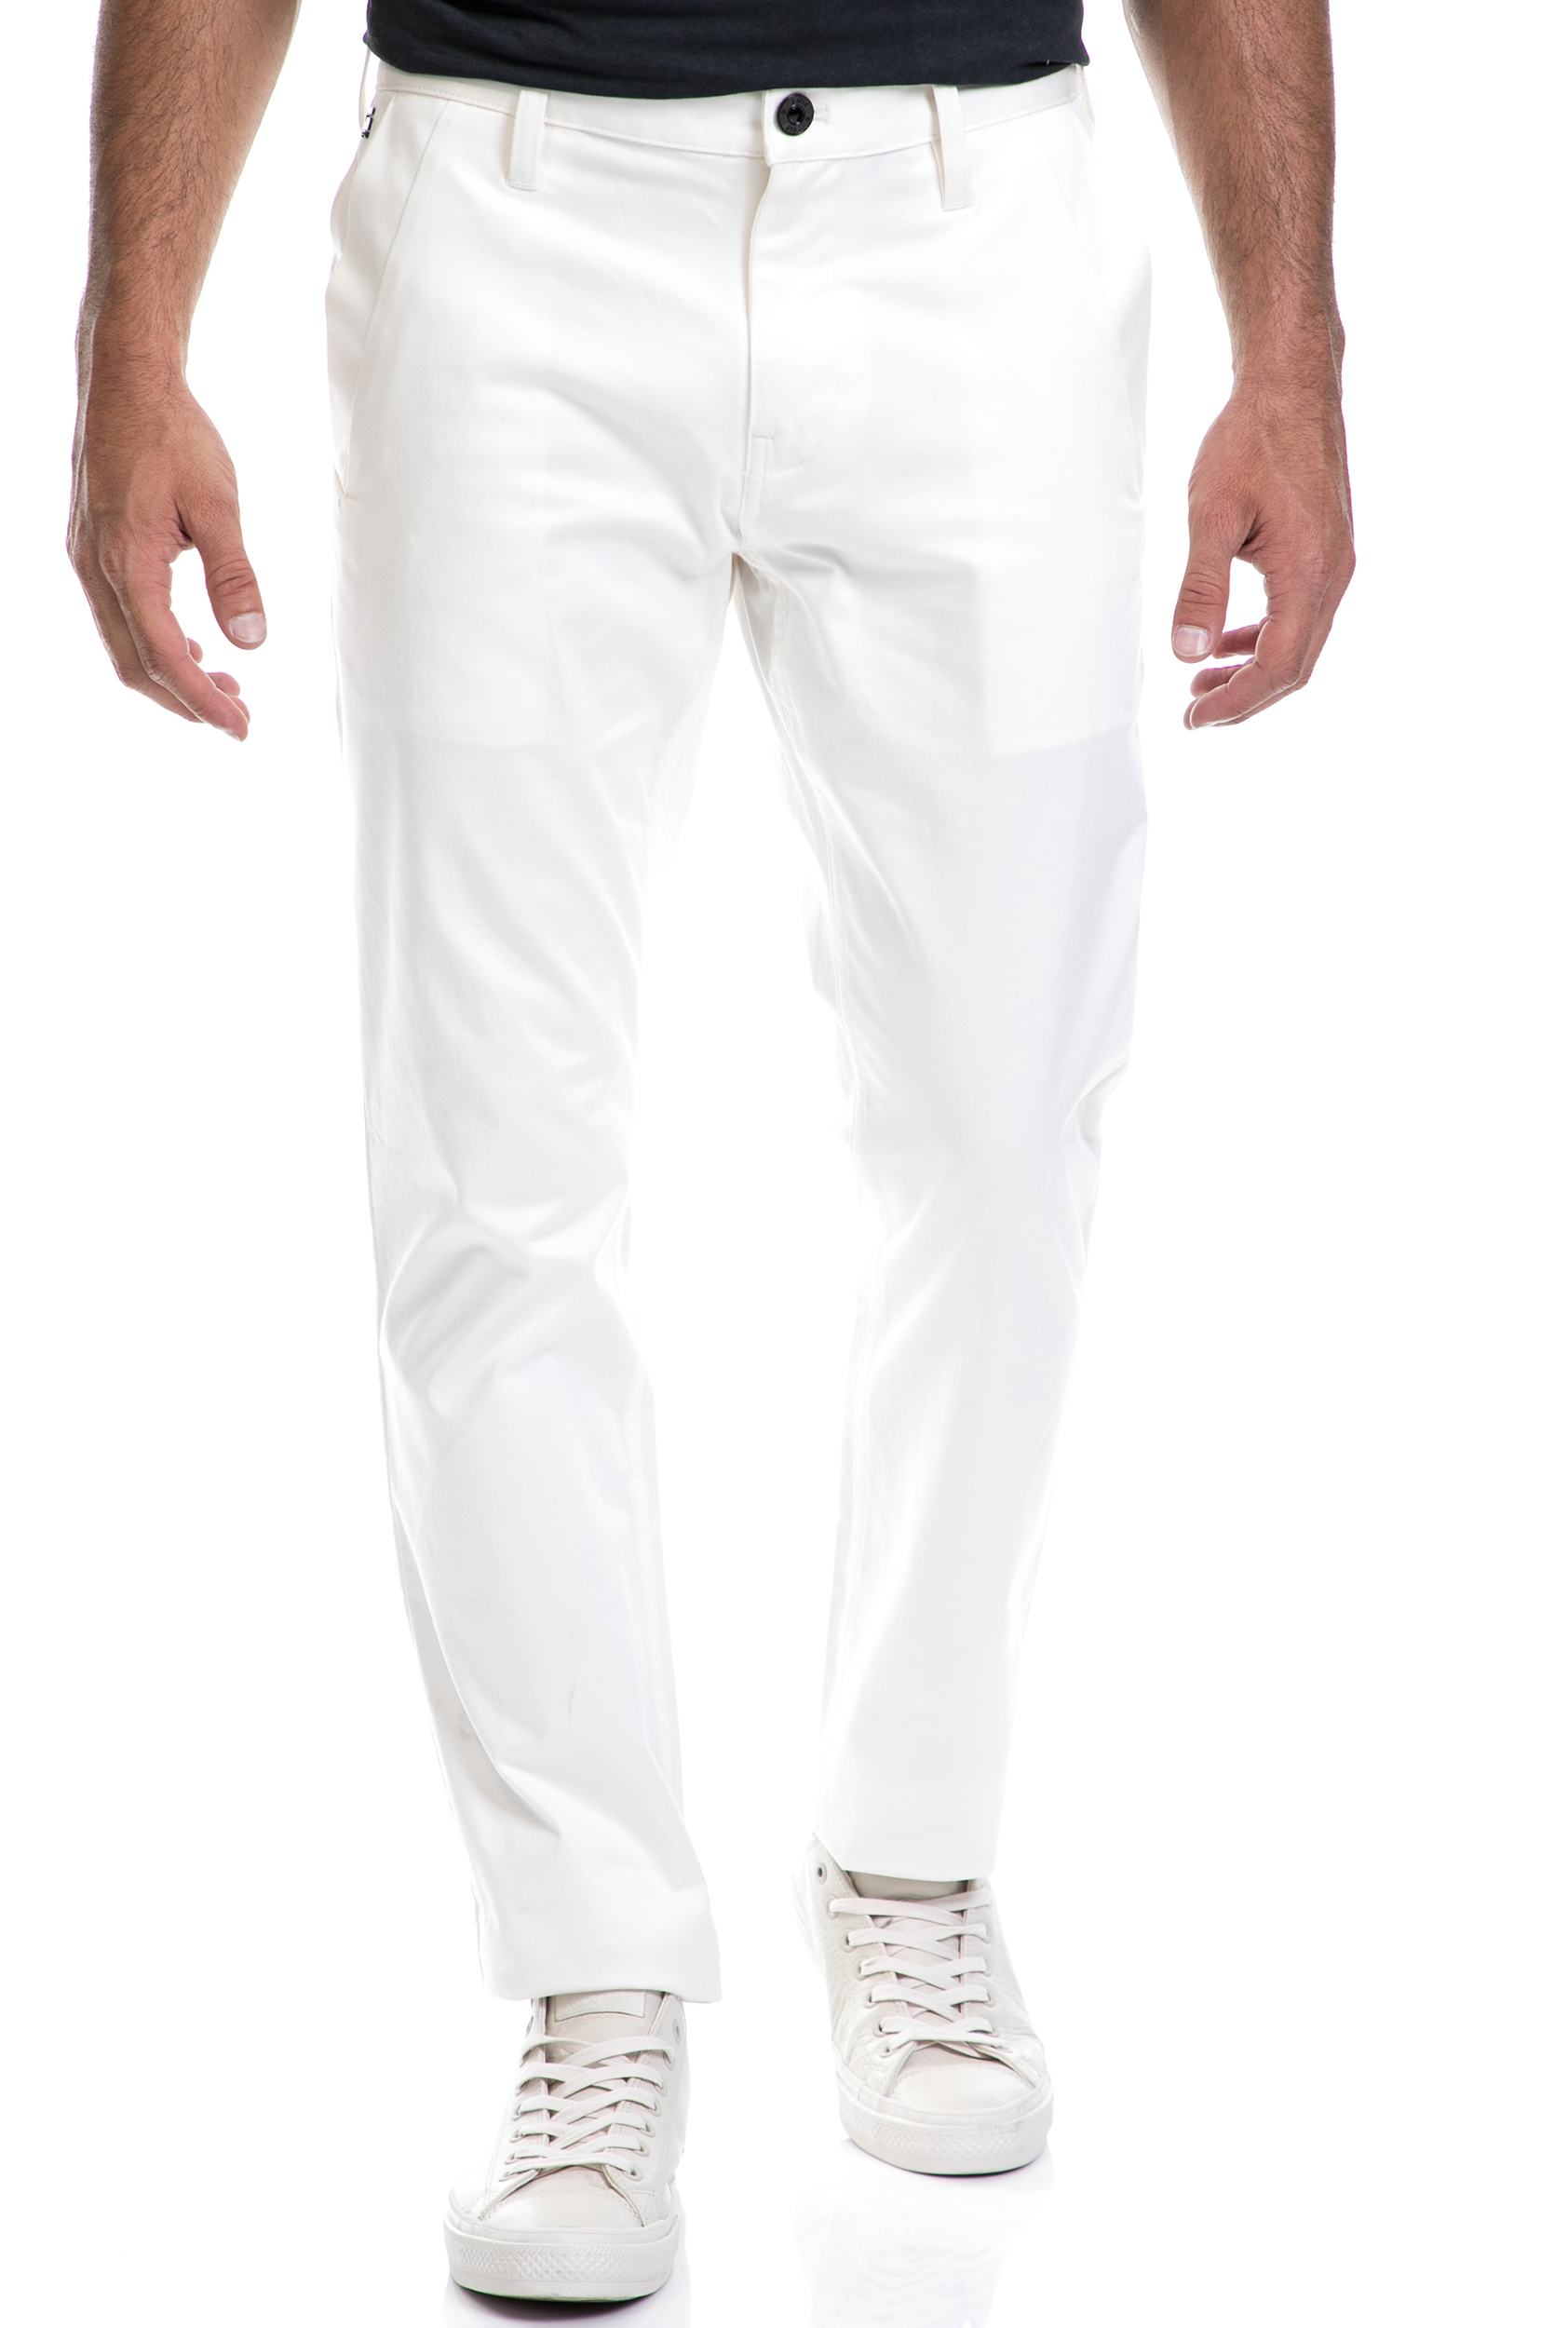 Ανδρικά/Ρούχα/Παντελόνια/Ισια Γραμμή G-STAR RAW - Ανδρικό παντελόνι G-STAR RAW λευκό